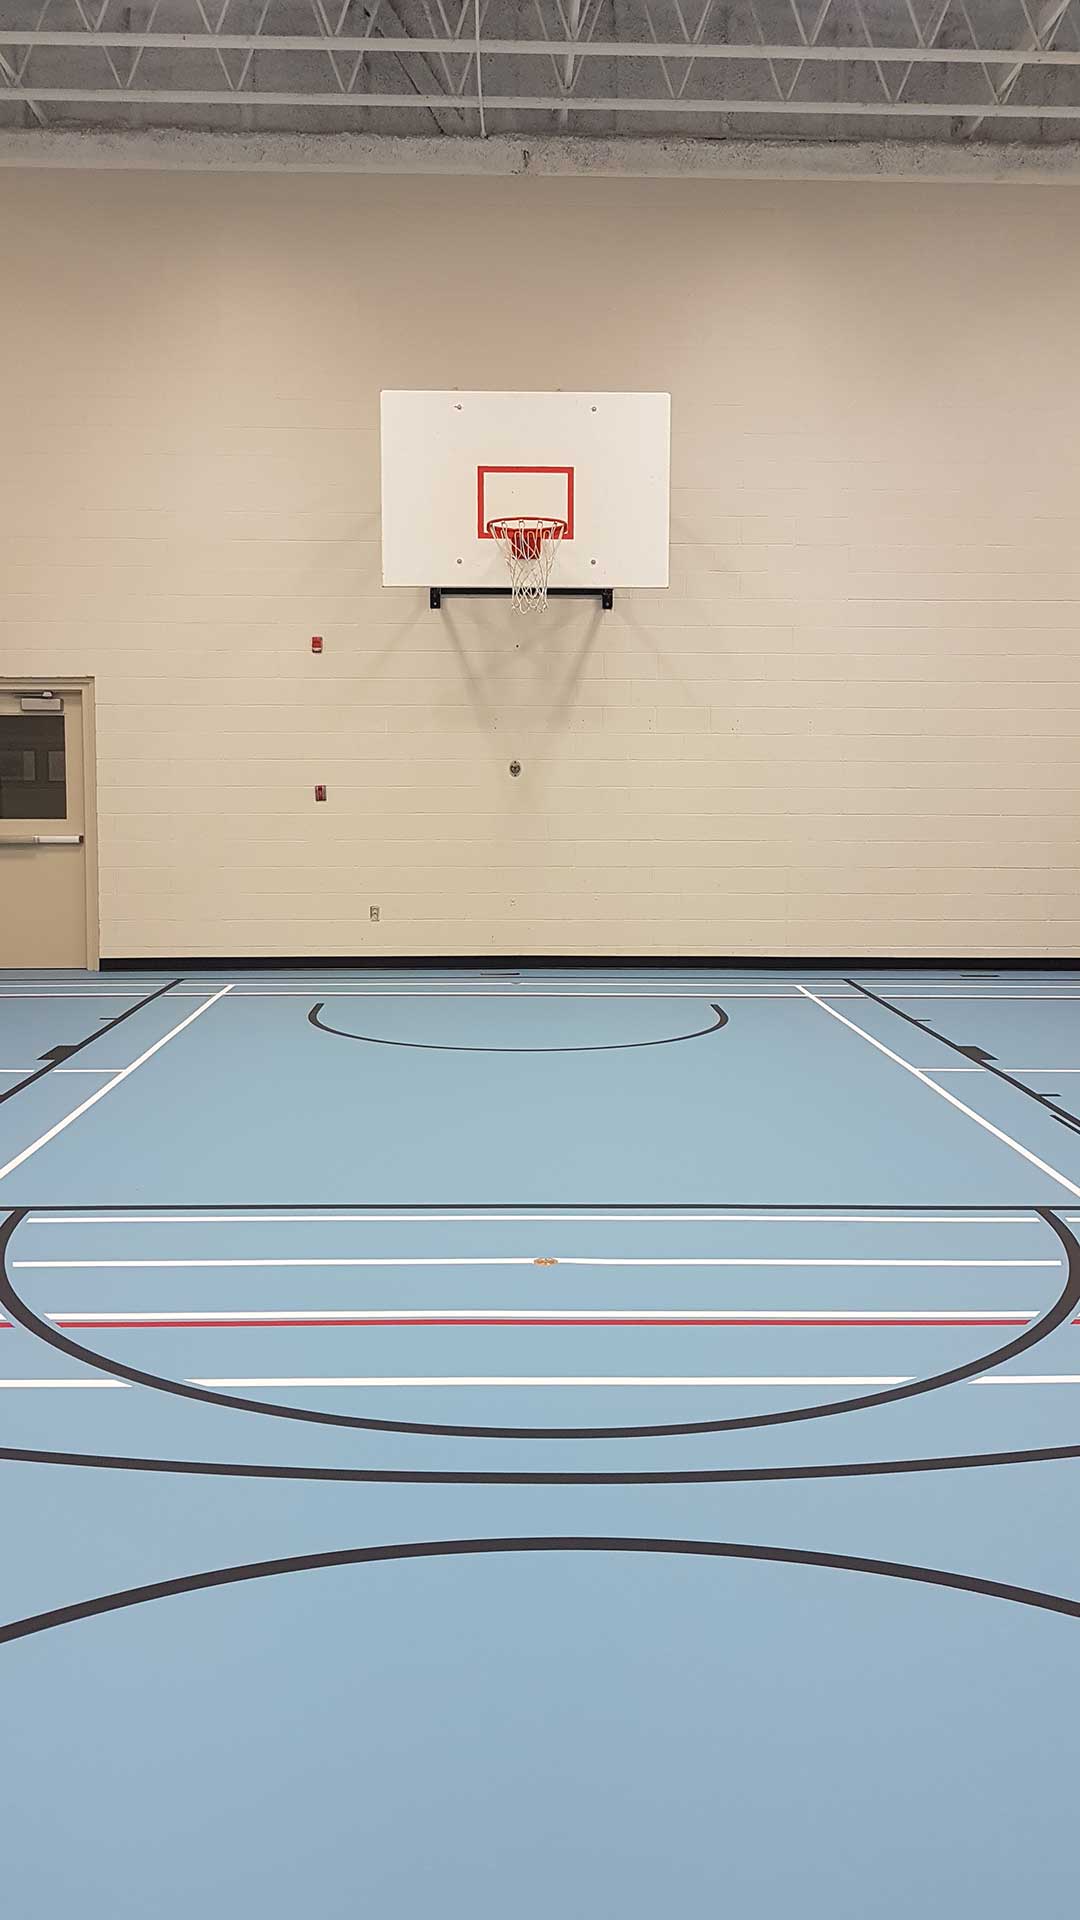 VersaFLO Rubber Flooring for Basketball Court Image 2